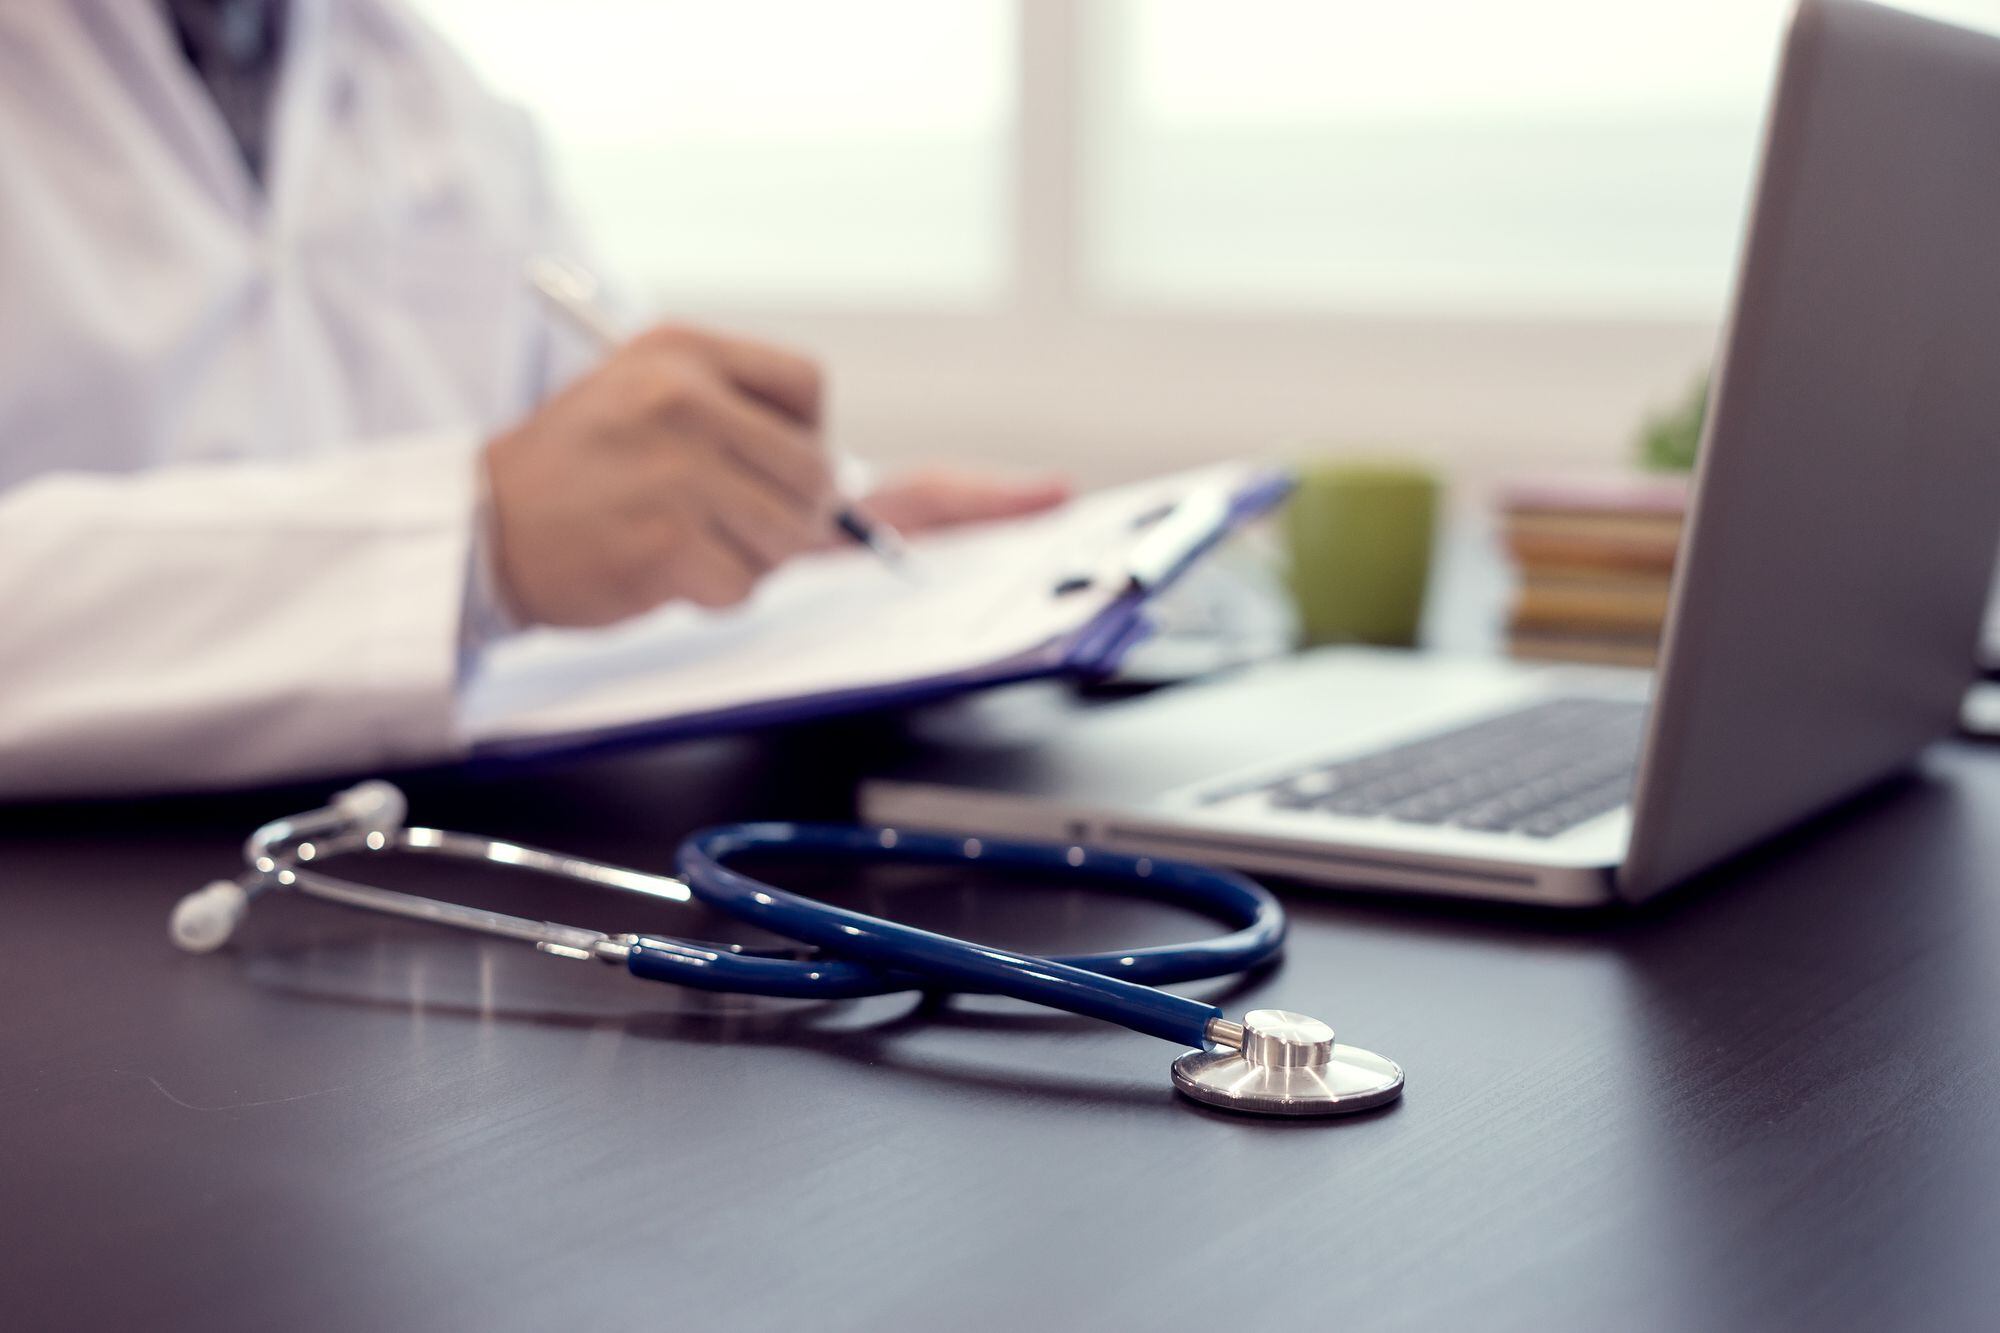 “Profunda preocupación”: el fuerte diagnóstico de siete sociedades científicas de cardiología sobre la crisis del sistema de salud